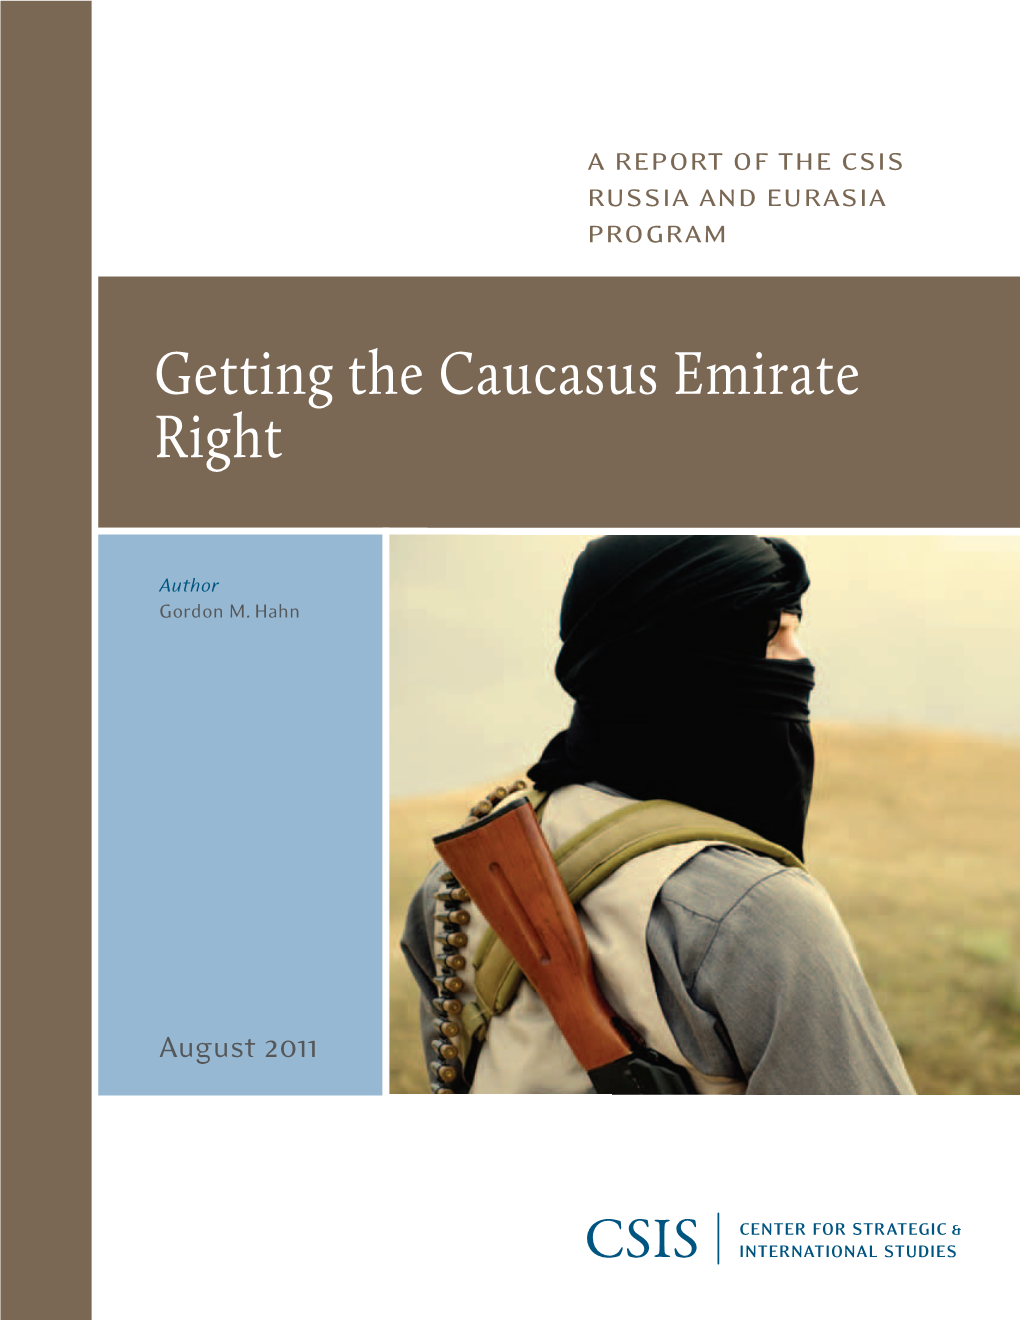 Caucasus Emirate Right